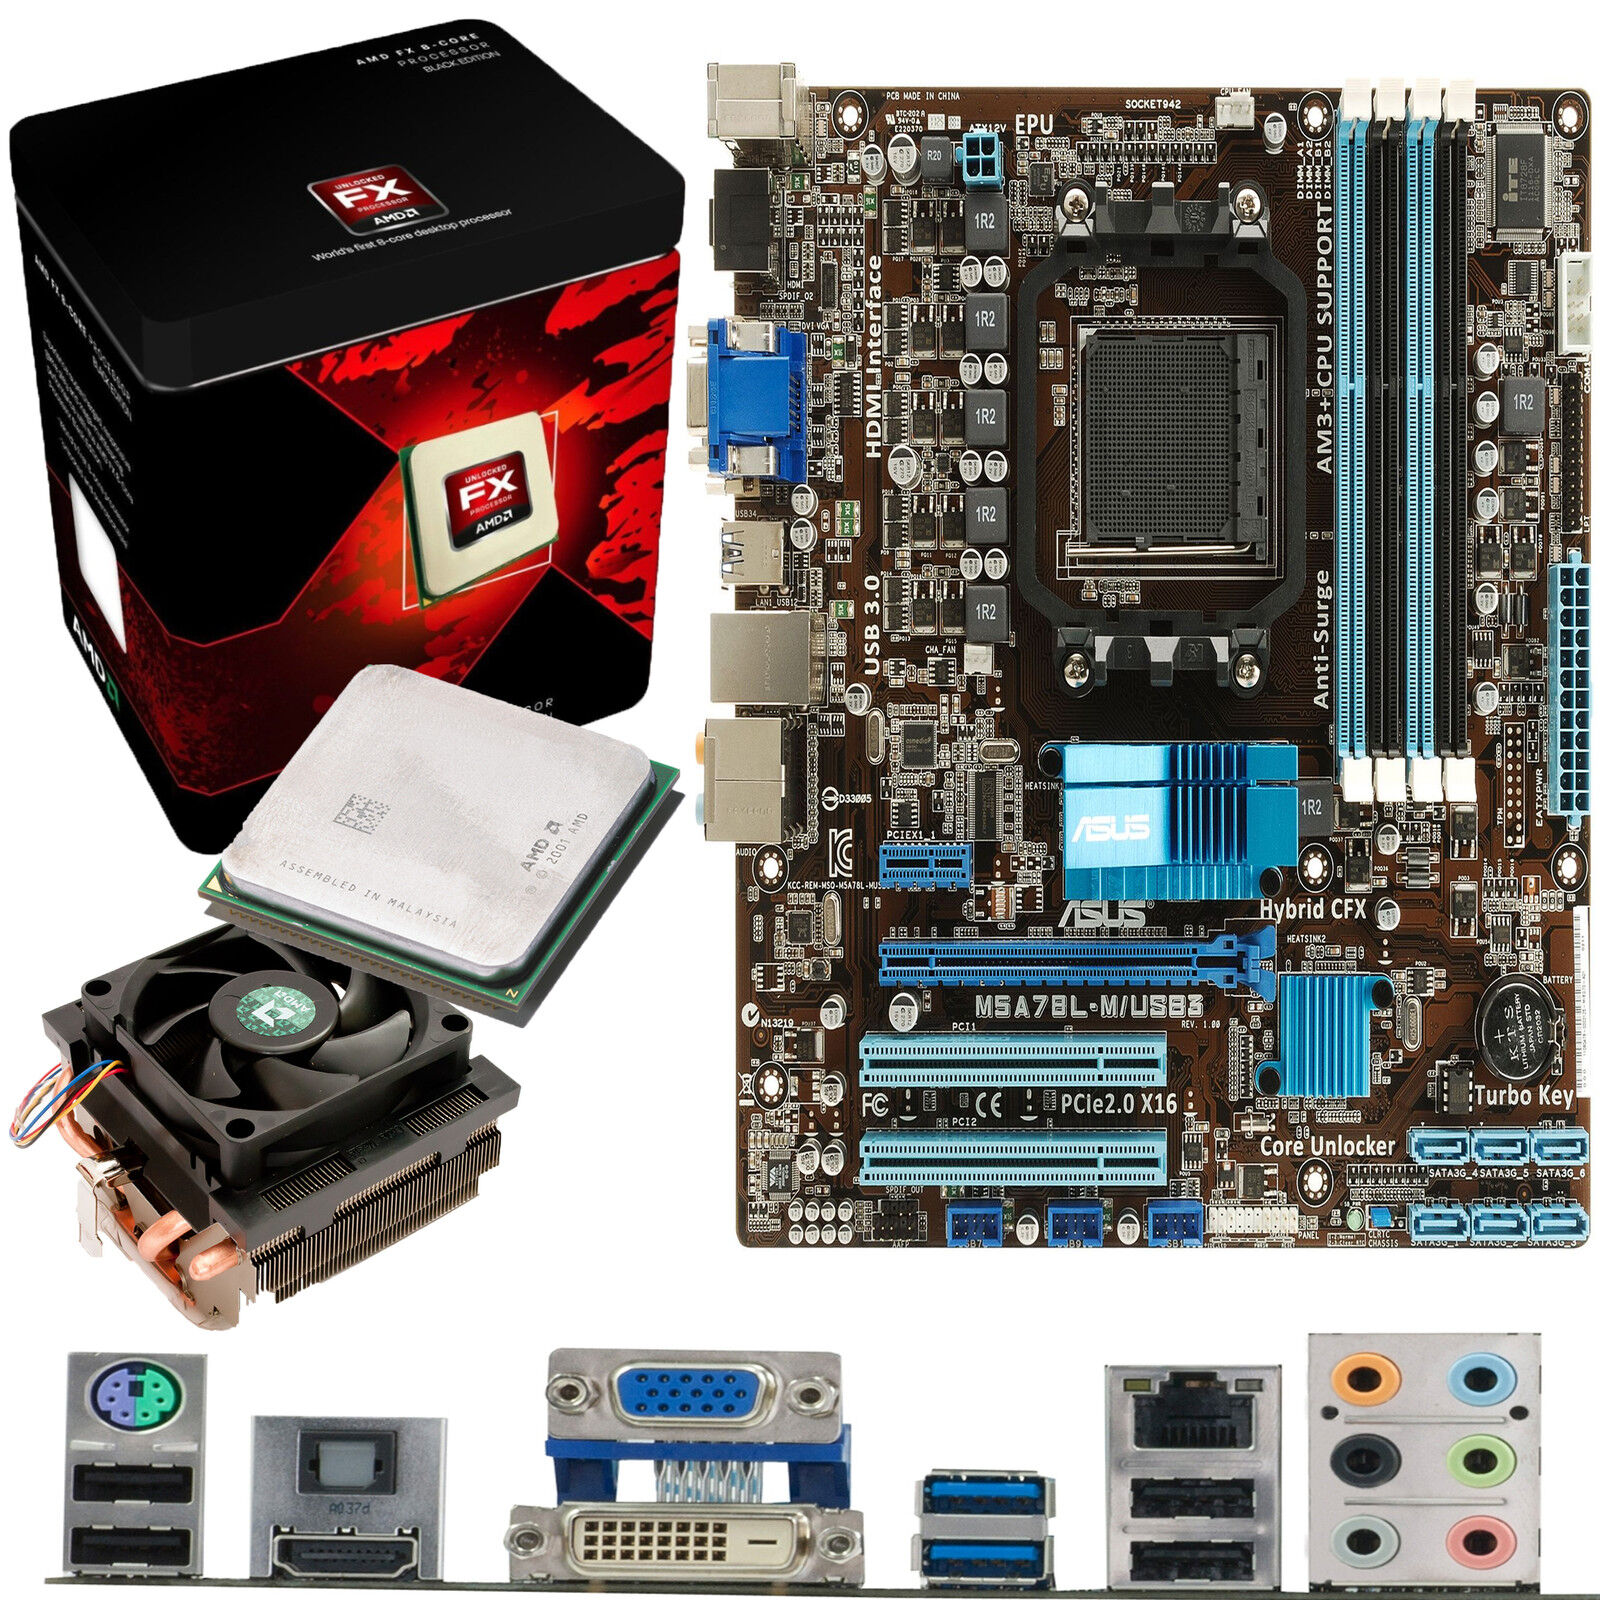 AMD X8 Core FX-8350 4.0Ghz & ASUS M5A78L-M USB3 - Board & CPU Bundle